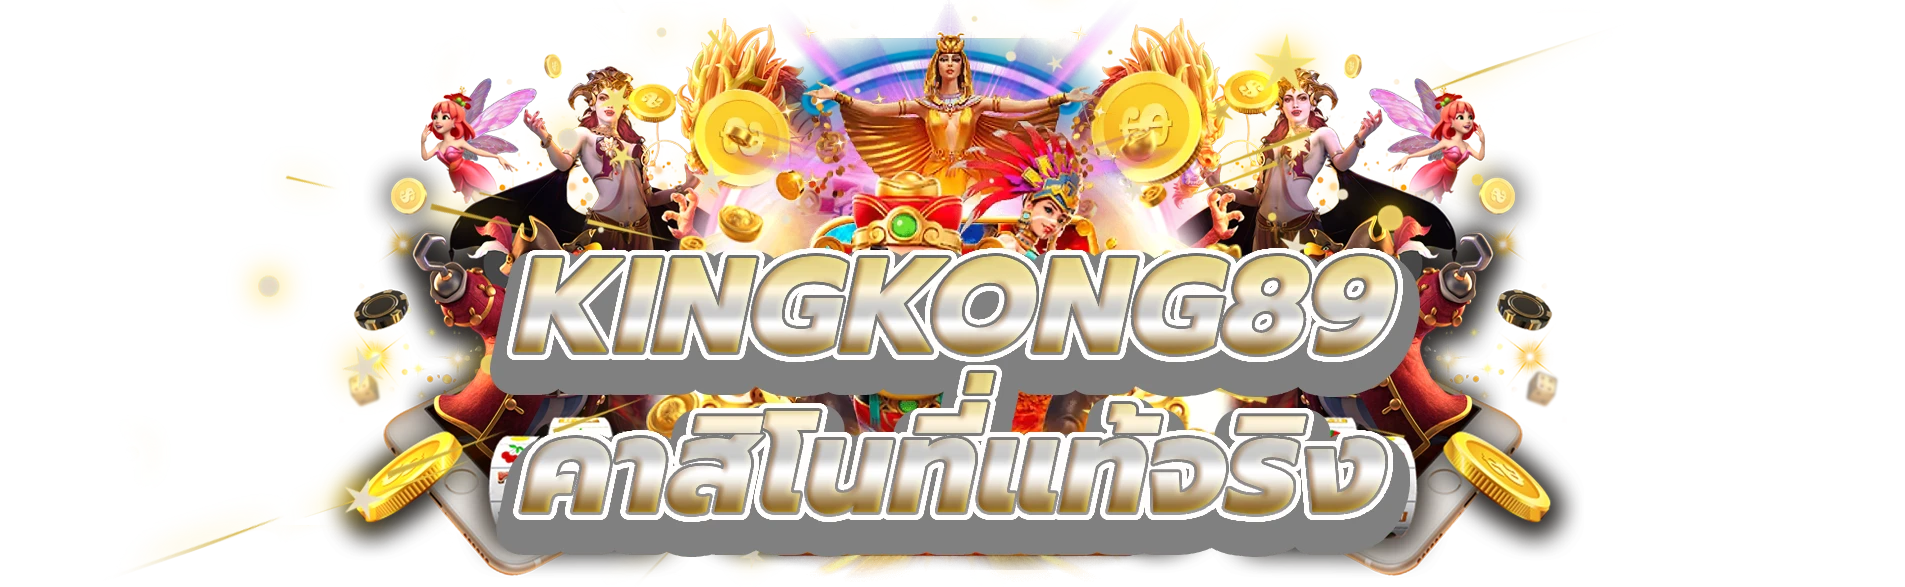 kingkong89 ก้าวเข้าสู่โลกของคาสิโนที่แท้จริง